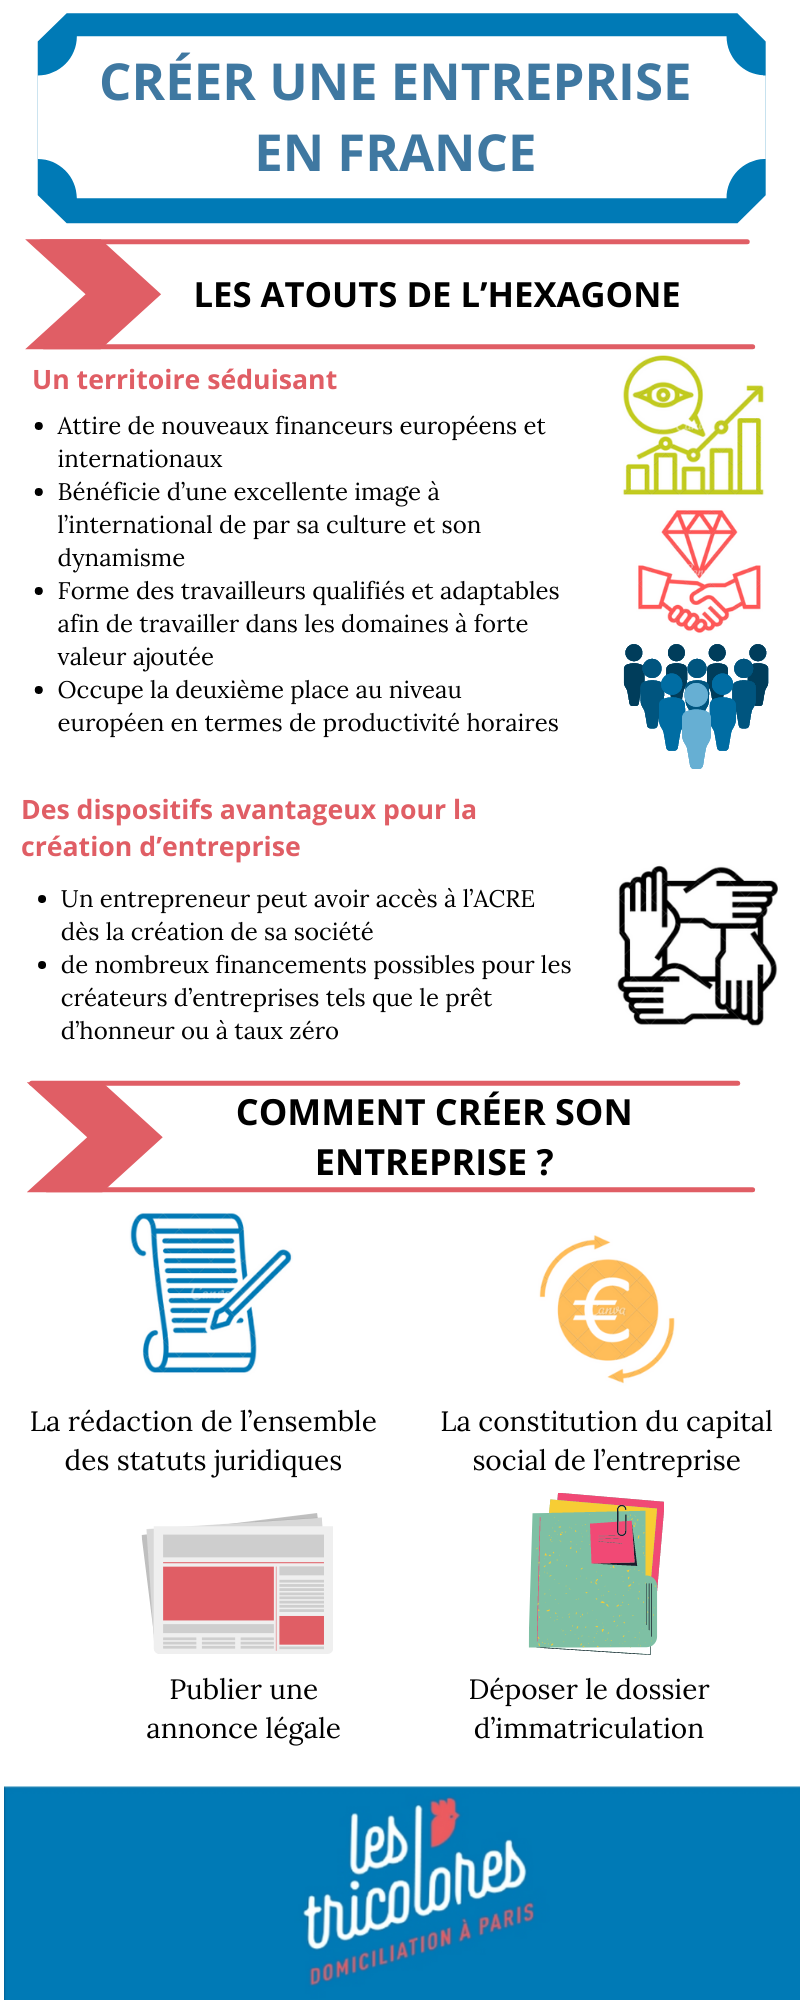 Créer une entreprise en France: tout savoir en 3 minutes